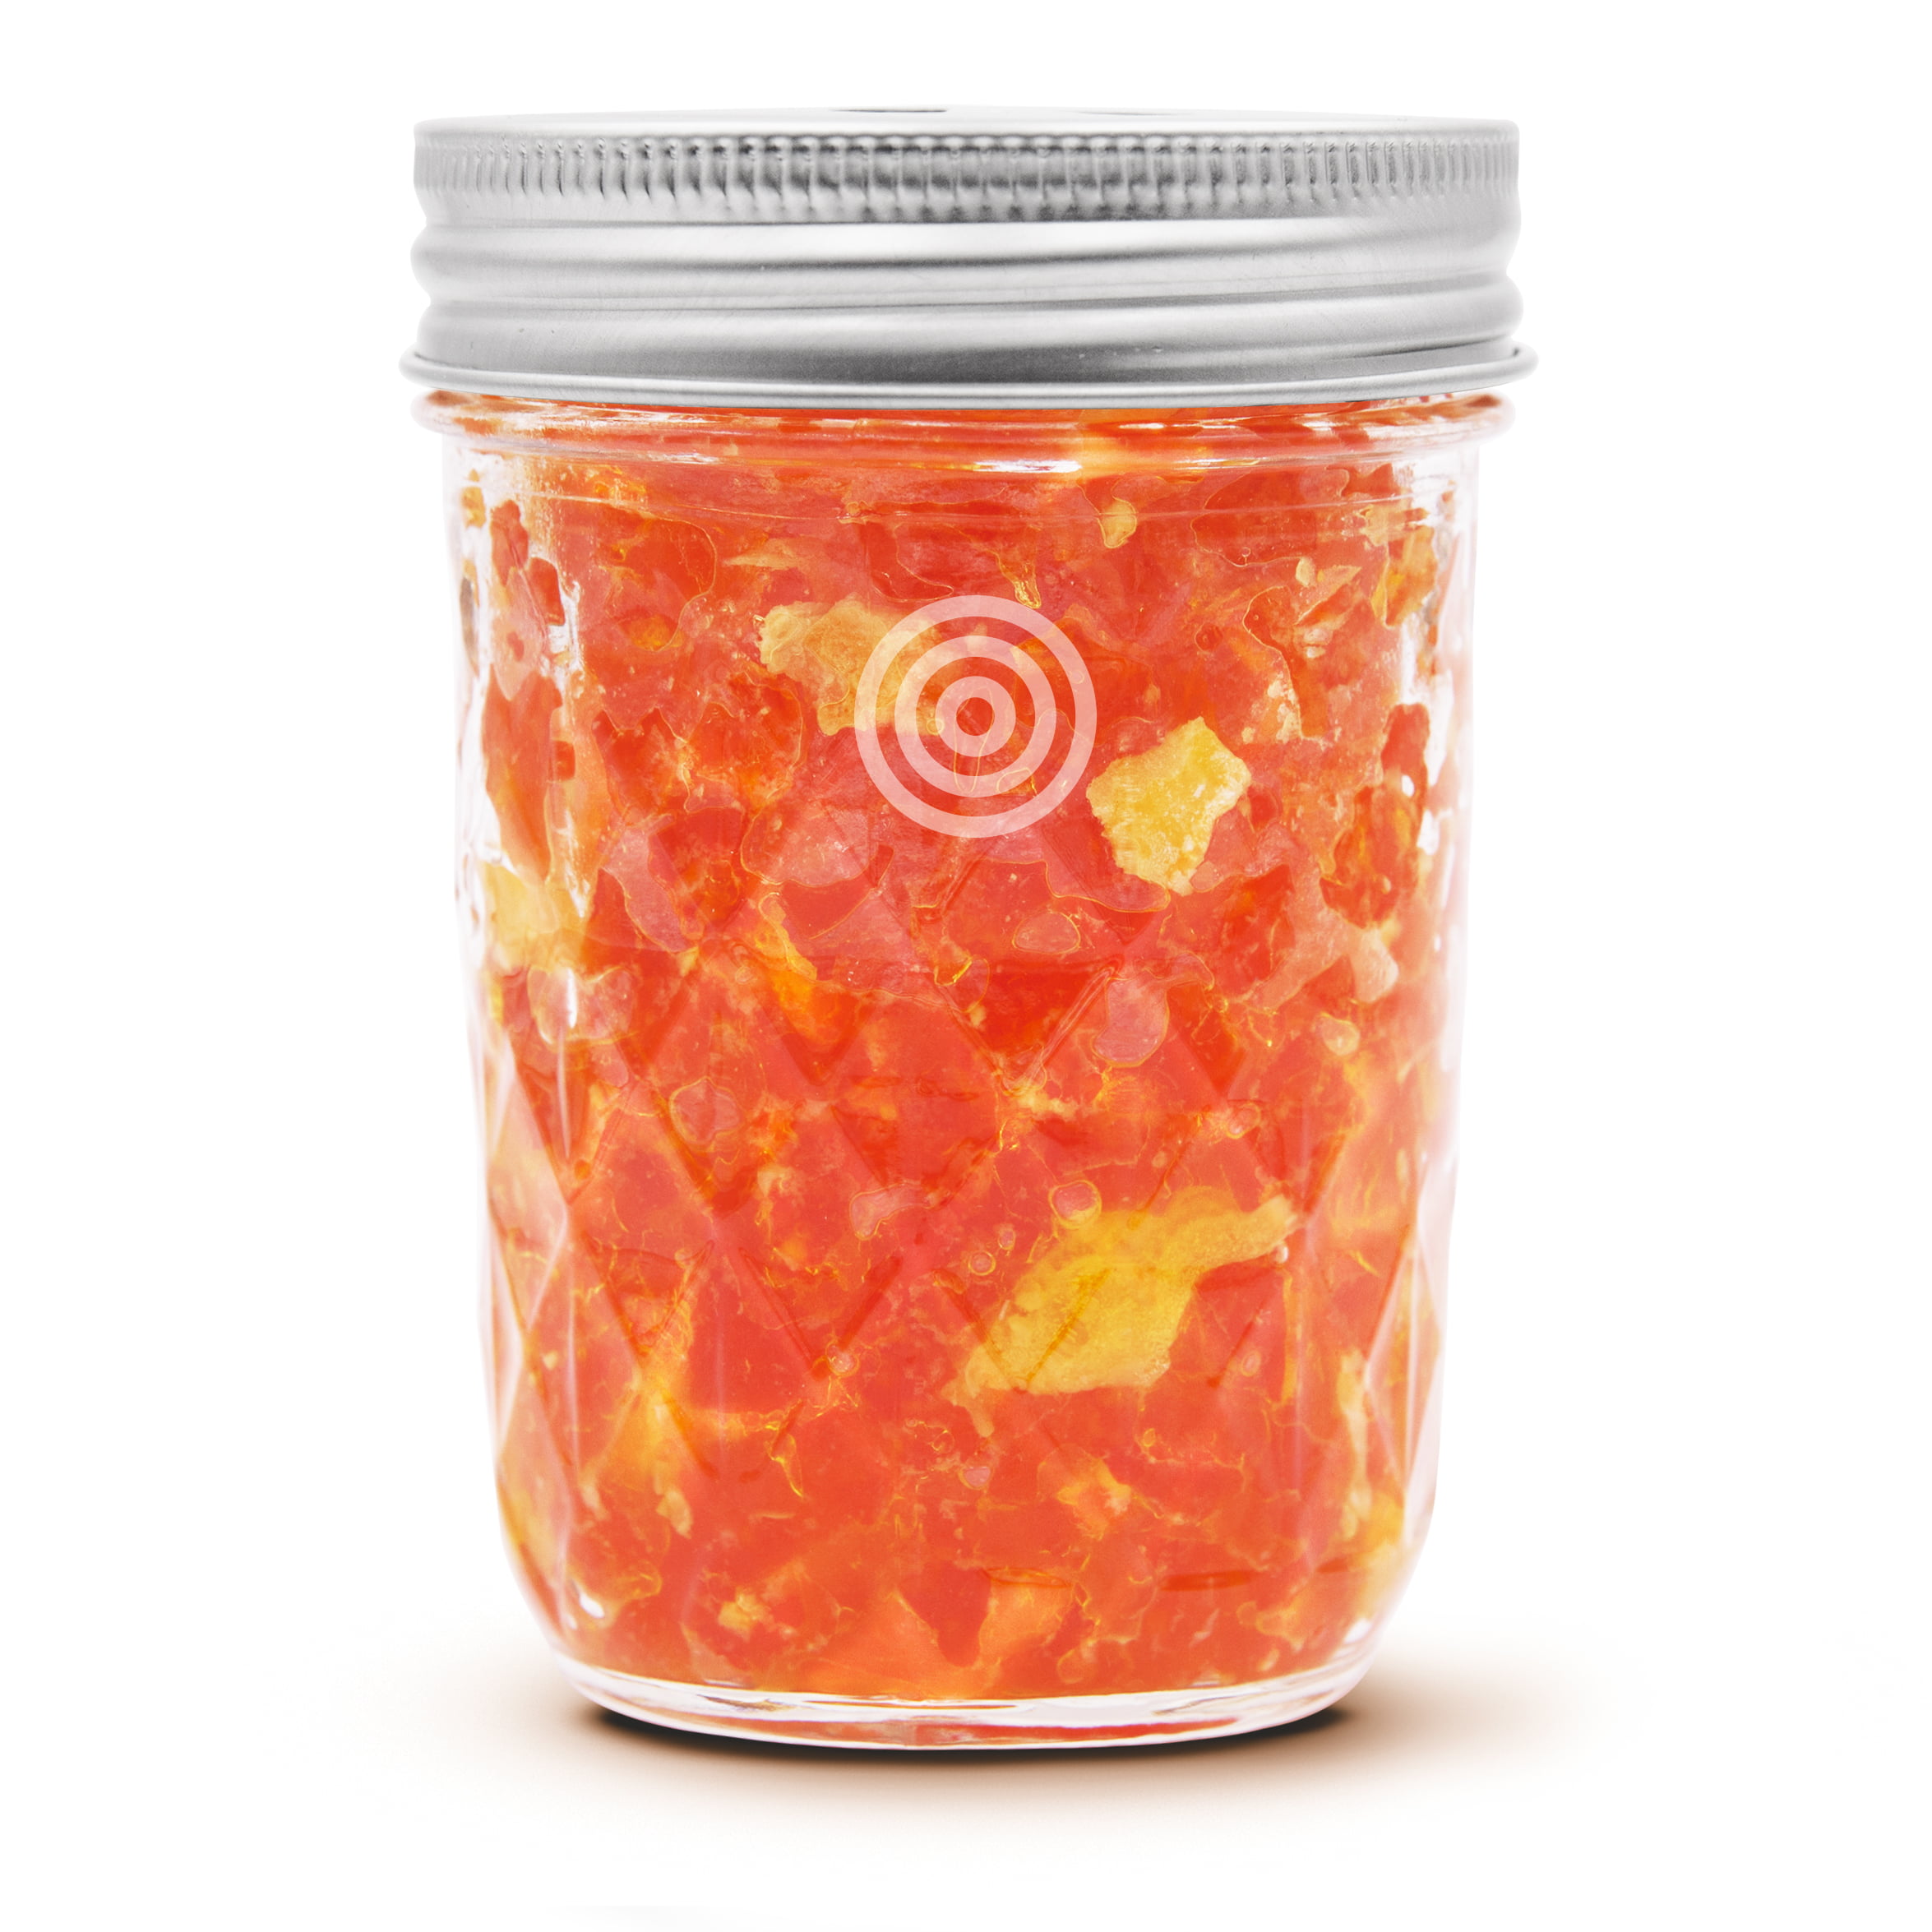 VIOIS, Orange & Citrus Aromatherapy Natural Car Air Freshener(Gel Type)  8oz.(225g) jar. 